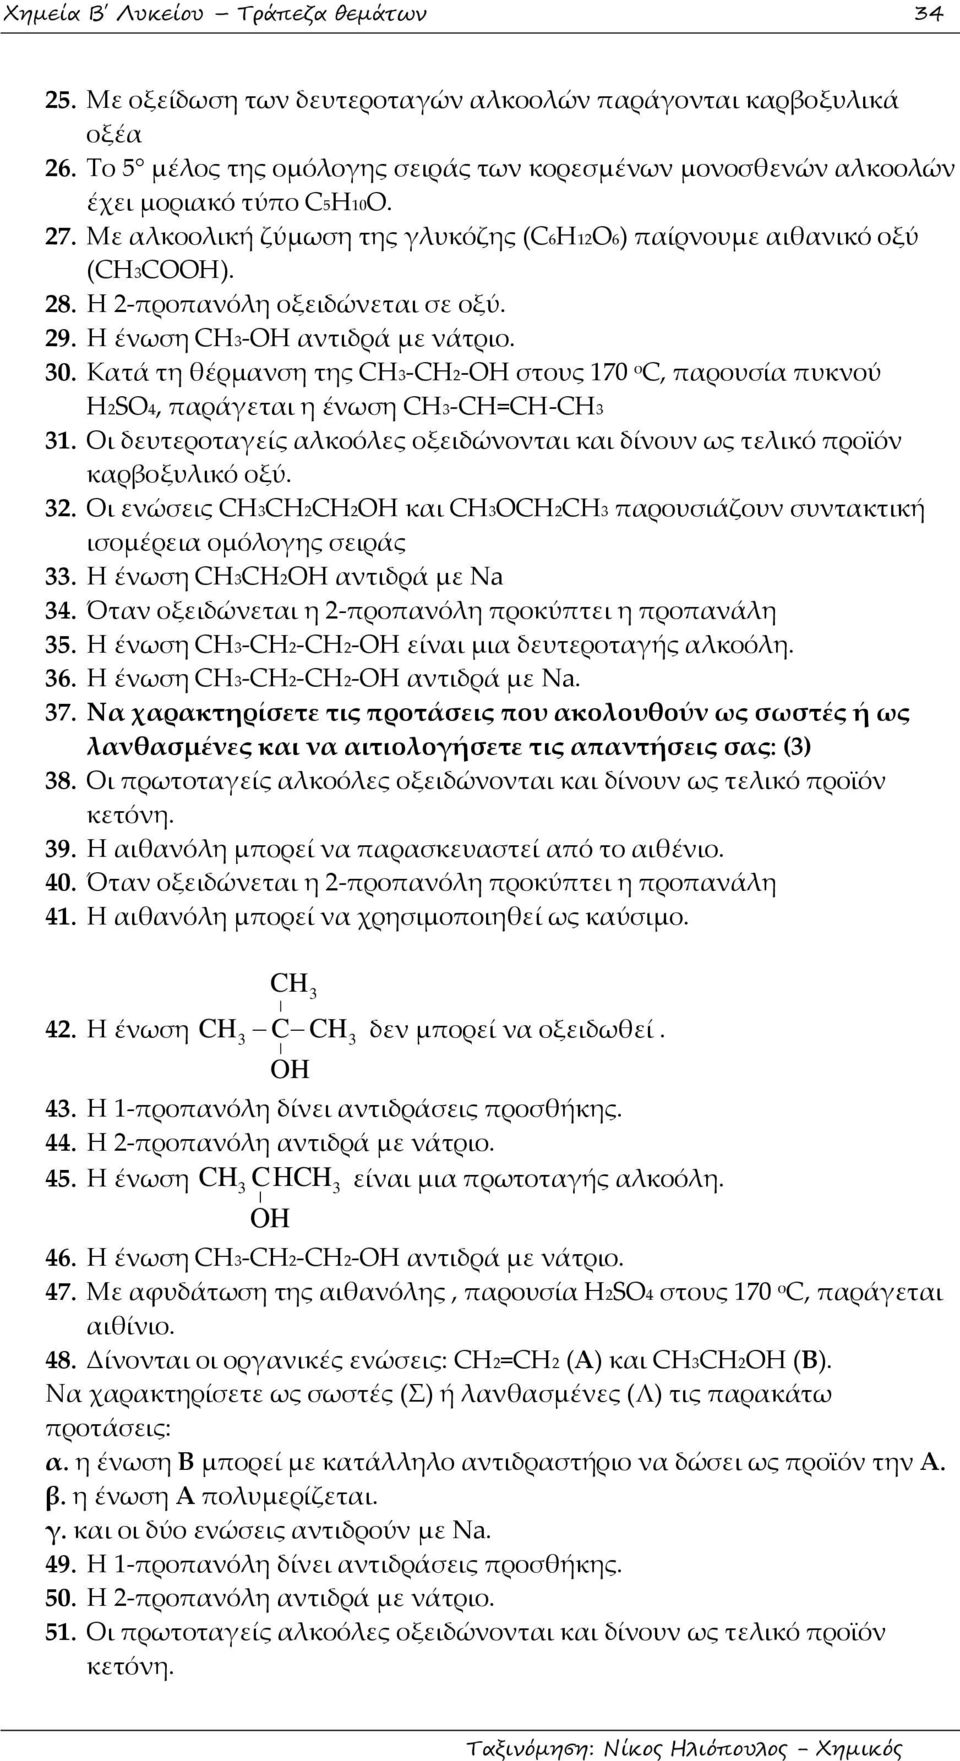 Η 2-προπανόλη οξειδώνεται σε οξύ. 29. Η ένωση CH3-OH αντιδρά με νάτριο. 30. Κατά τη θέρμανση της CH3-CH2-OH στους 170 ο C, παρουσία πυκνού H2SO4, παράγεται η ένωση CH3-CH=CH-CH3 31.